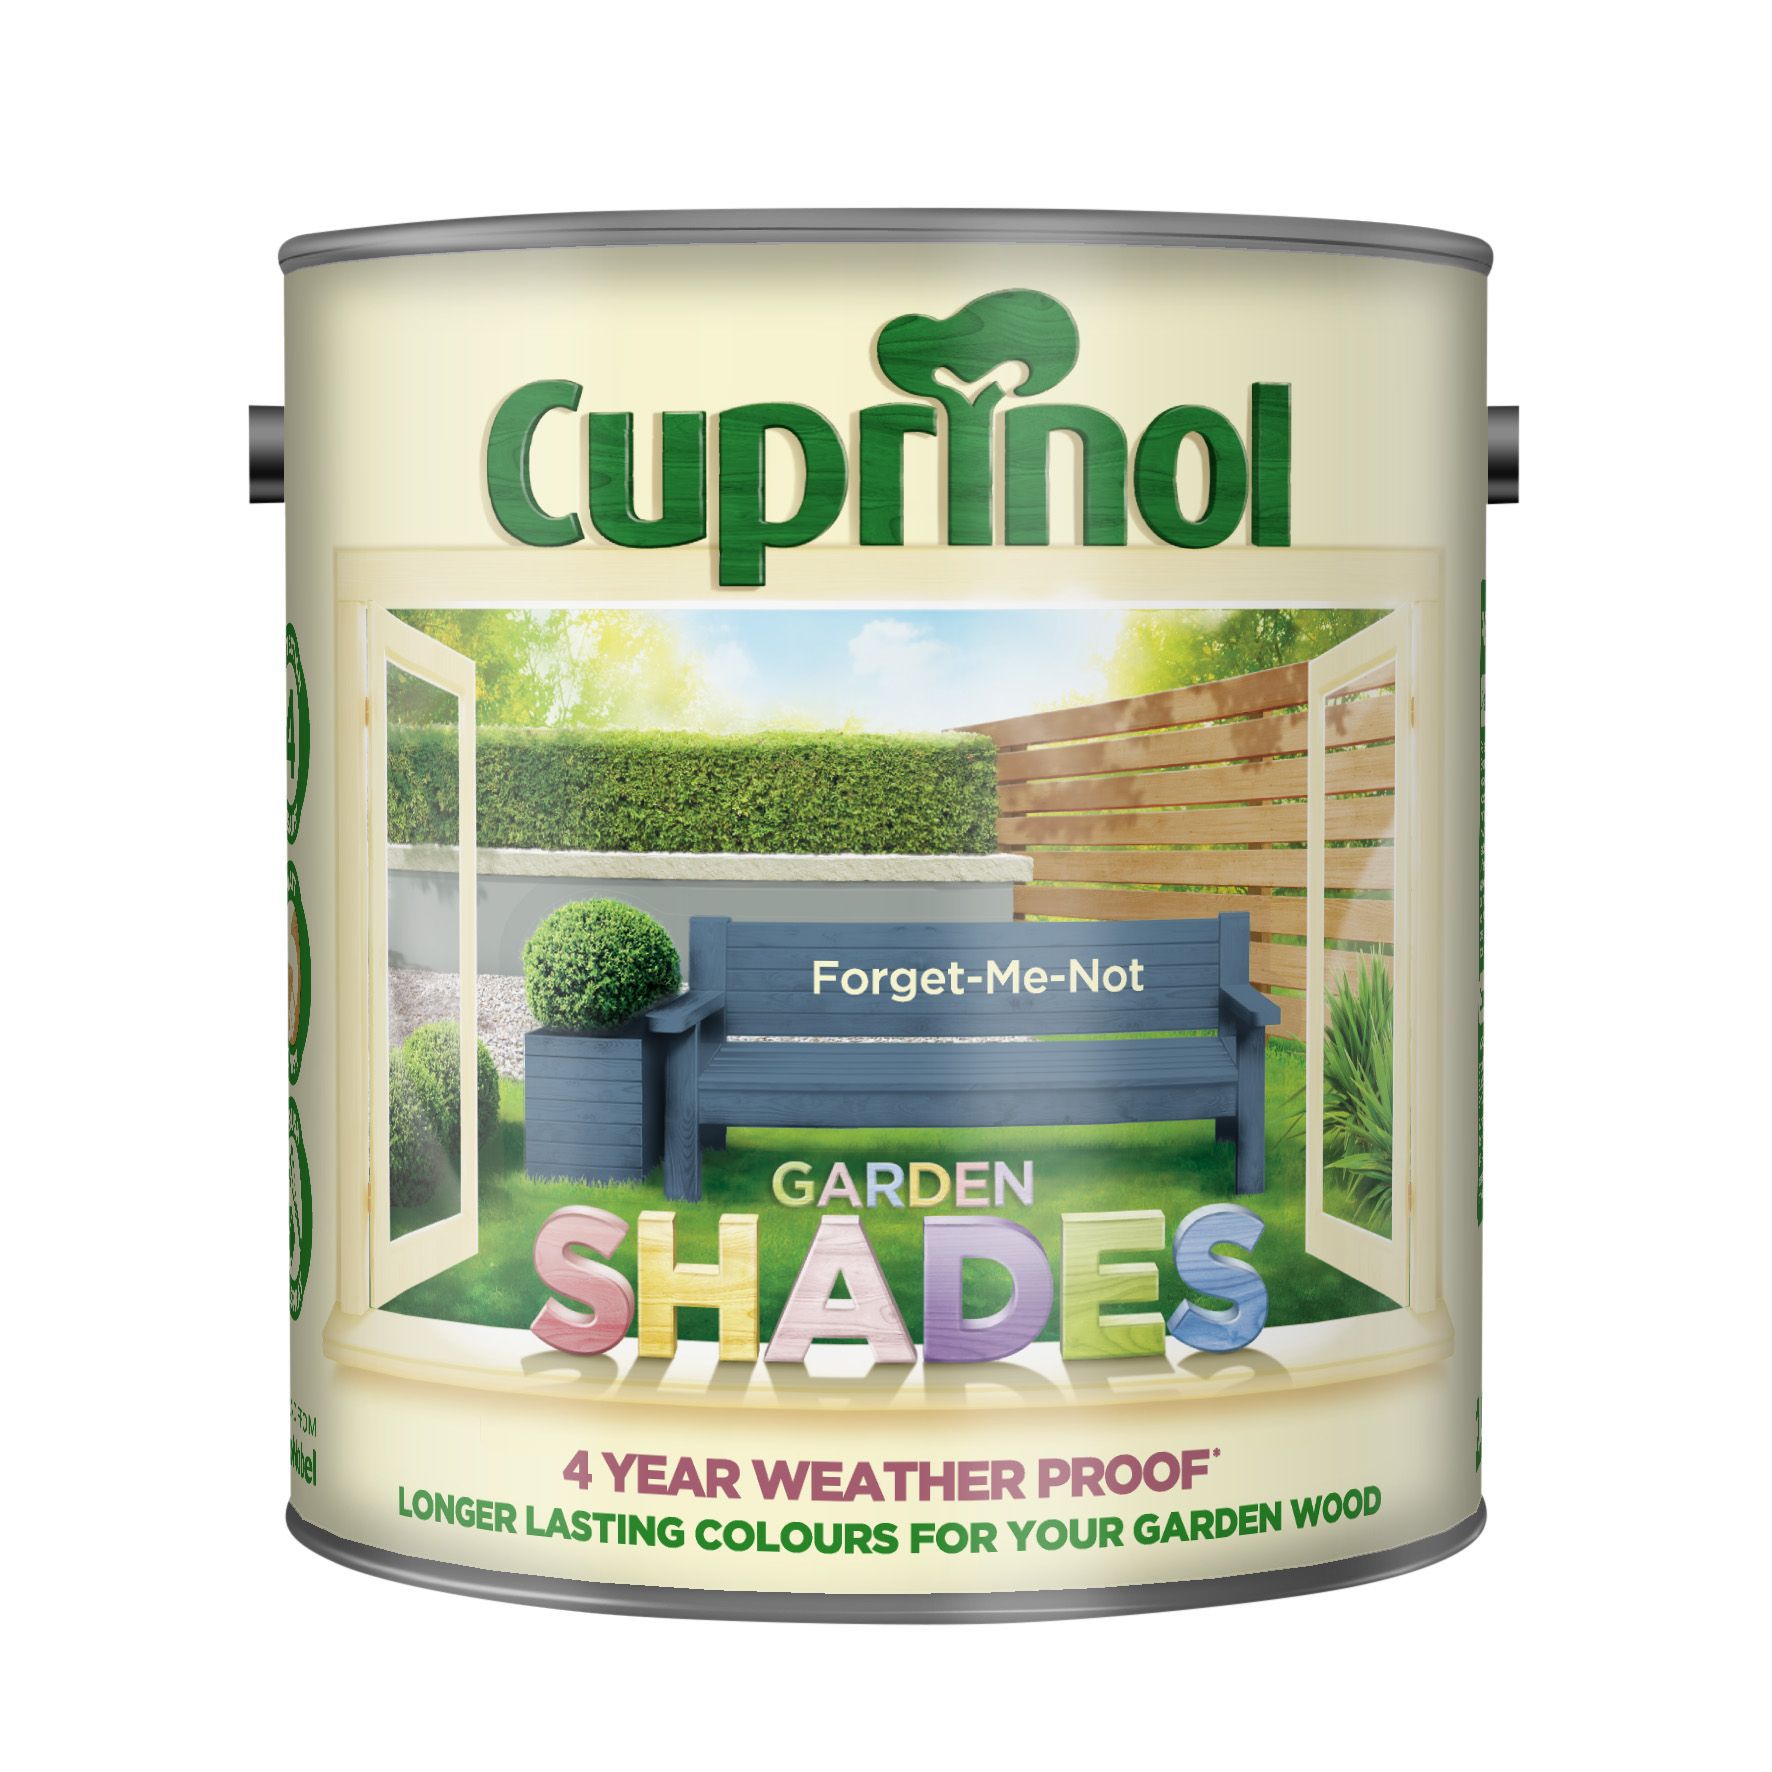 Cuprinol Garden shades Forget me not Matt Multi-surface Exterior Wood paint, 2.5L